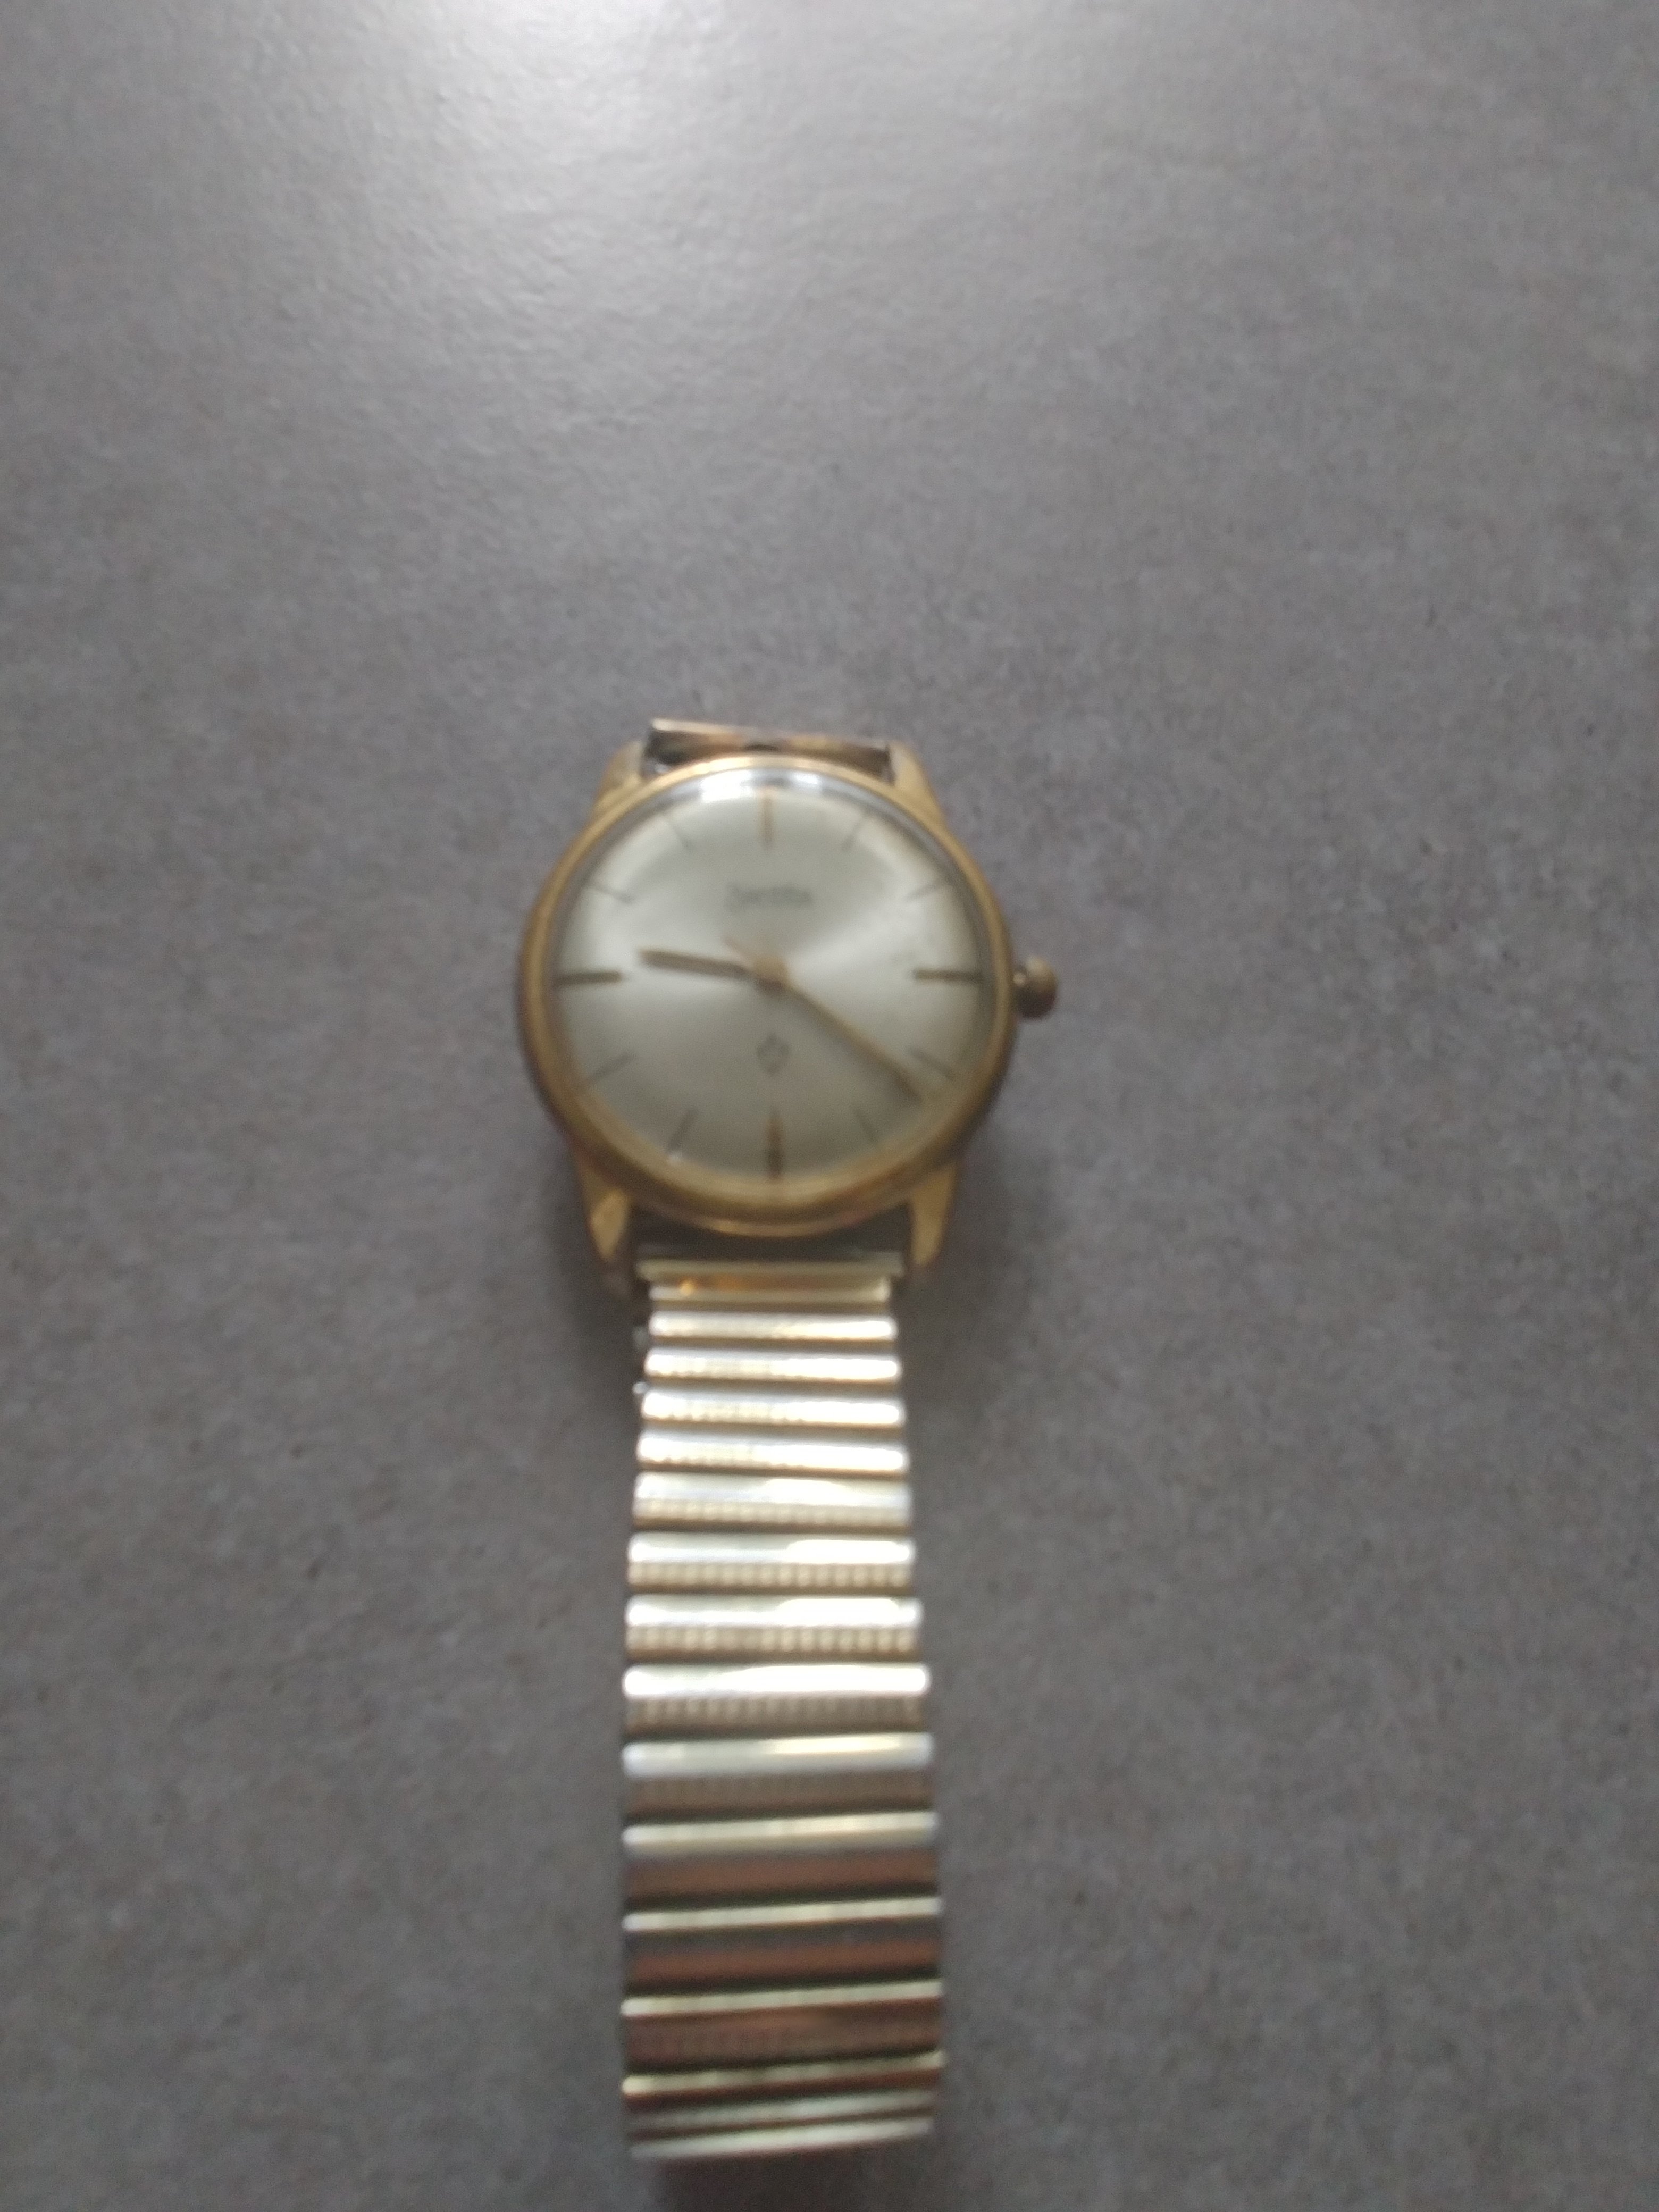 Zentra automatic horloge informatie gezocht - Vintage Horlogeforum.nl - het forum voor liefhebbers van horloges